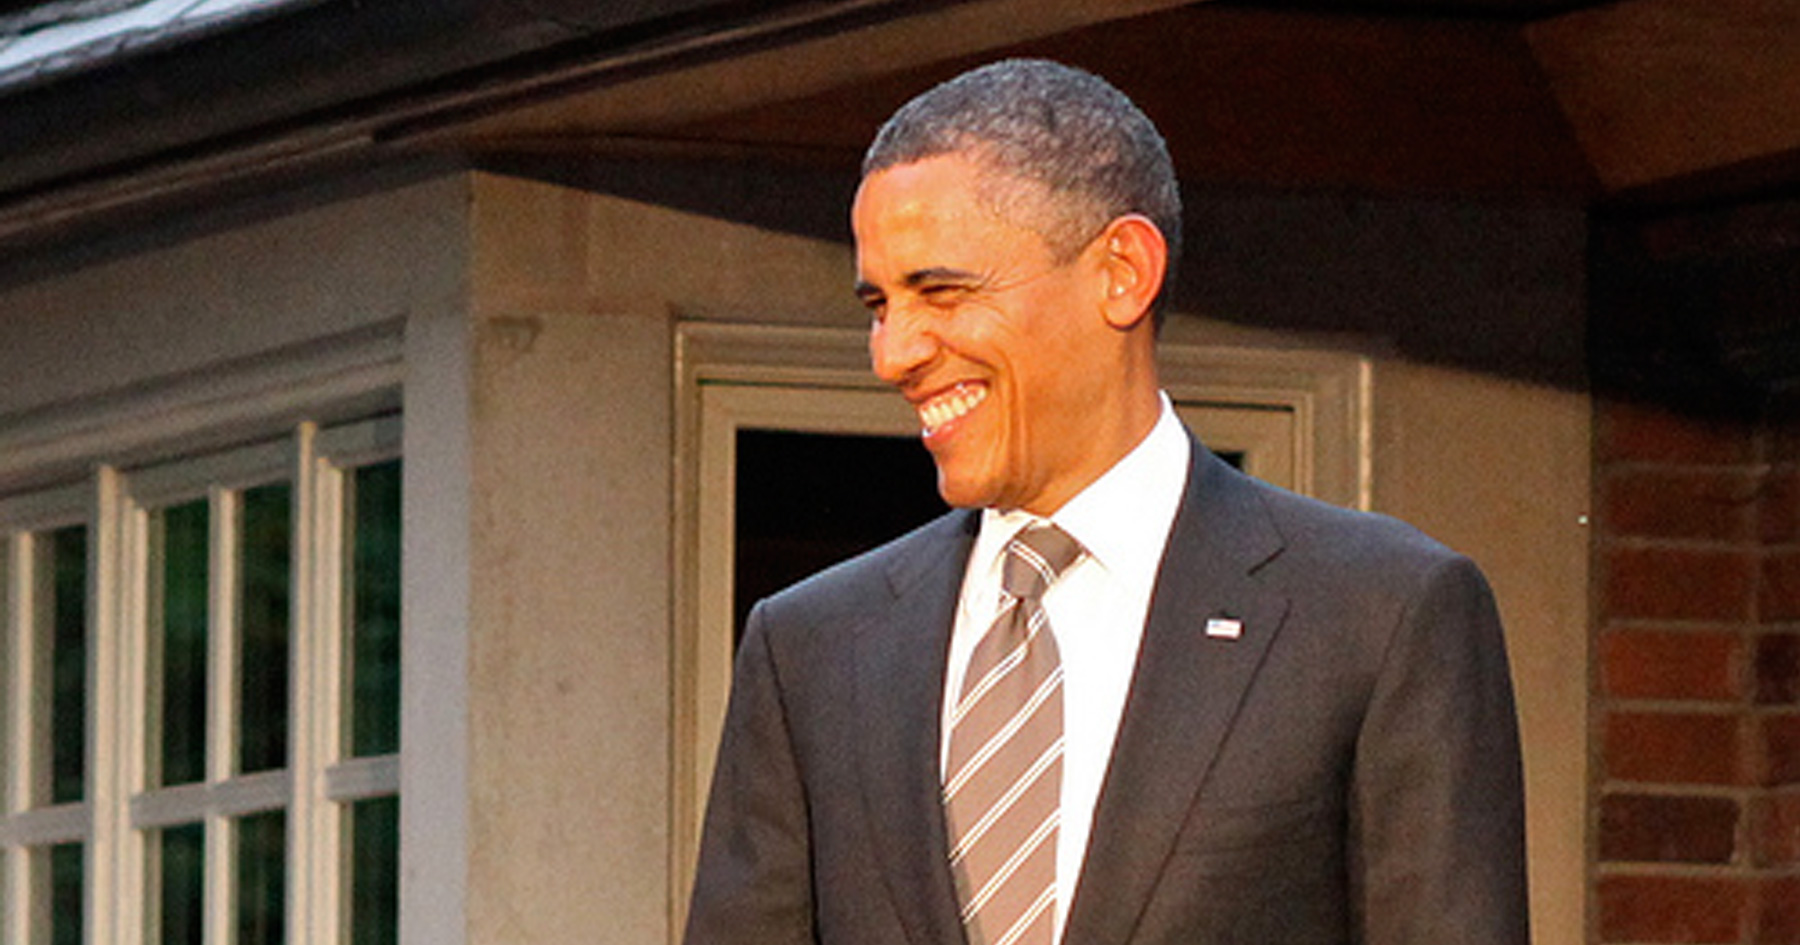 Smiling Obama